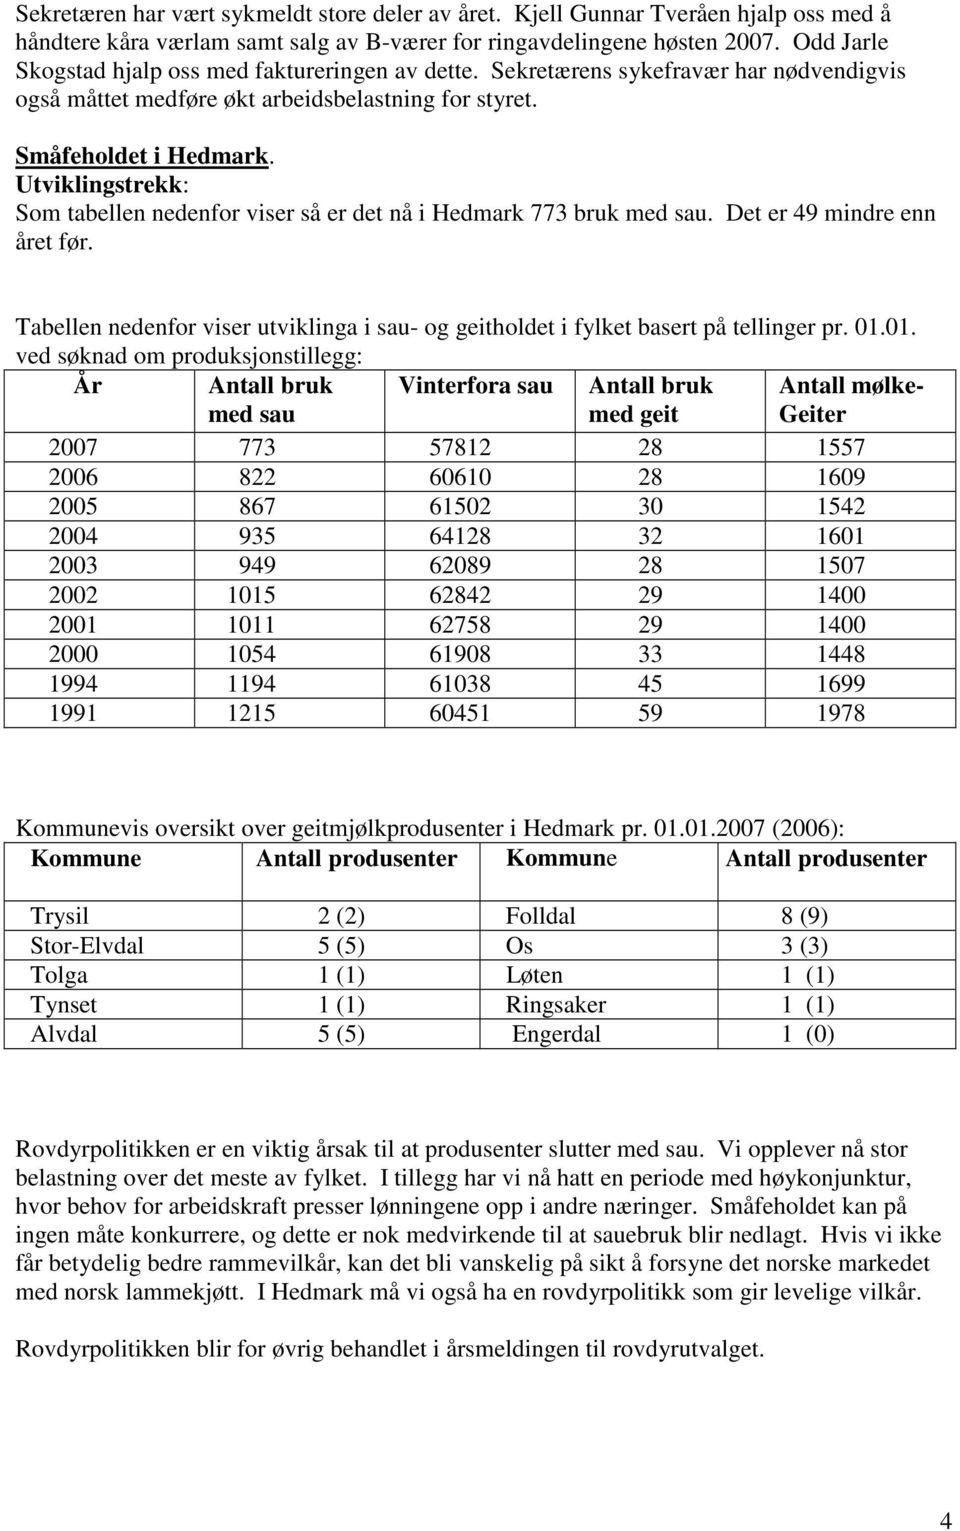 Utviklingstrekk: Som tabellen nedenfor viser så er det nå i Hedmark 773 bruk med sau. Det er 49 mindre enn året før.